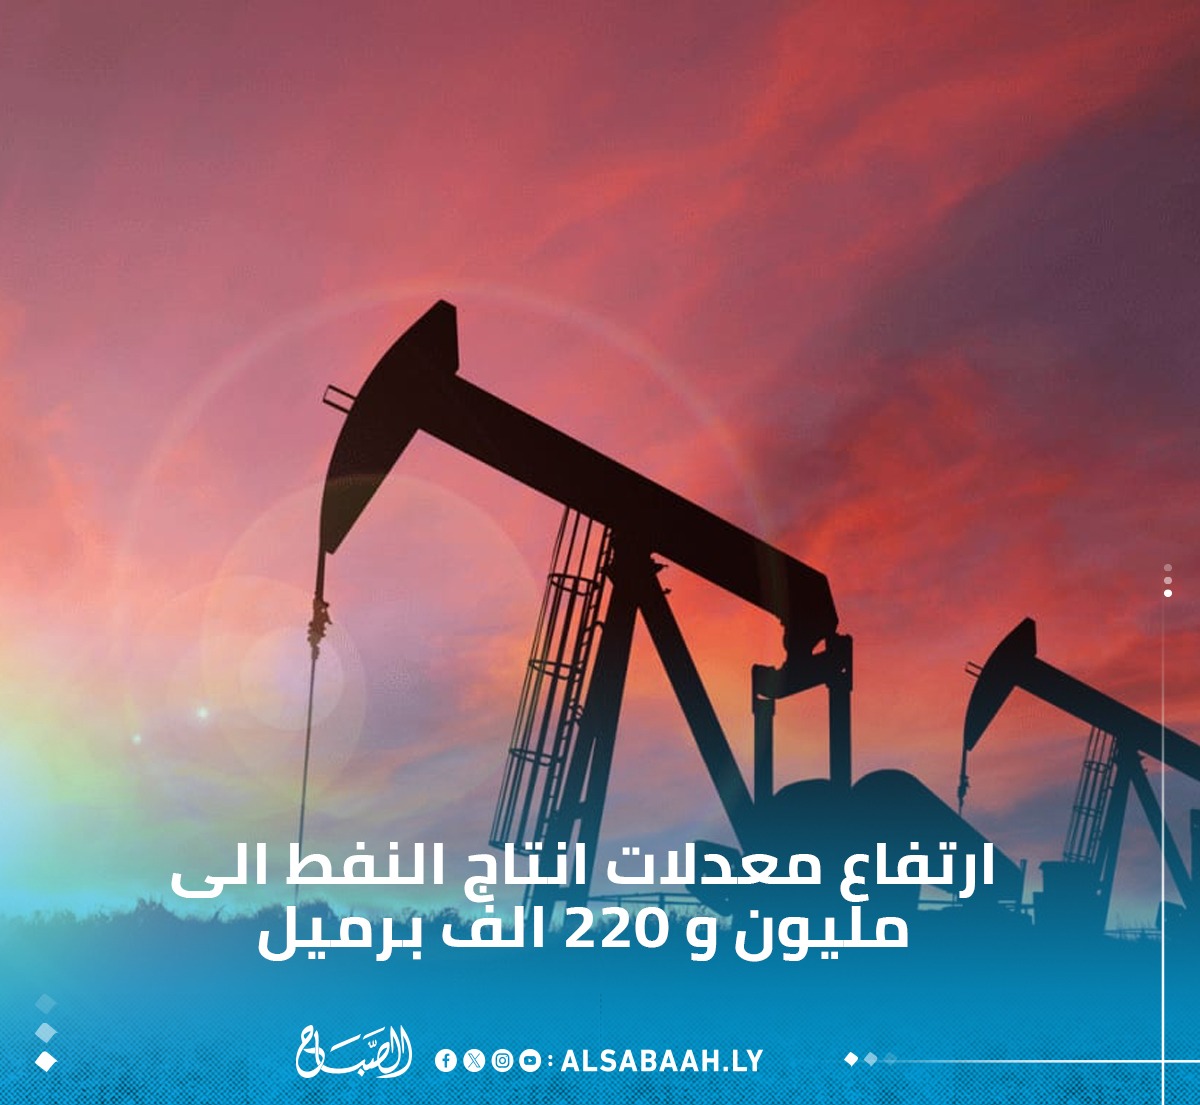 صادرات خام النفط ترتفع الى مليون و220 ألف برميل يوميا